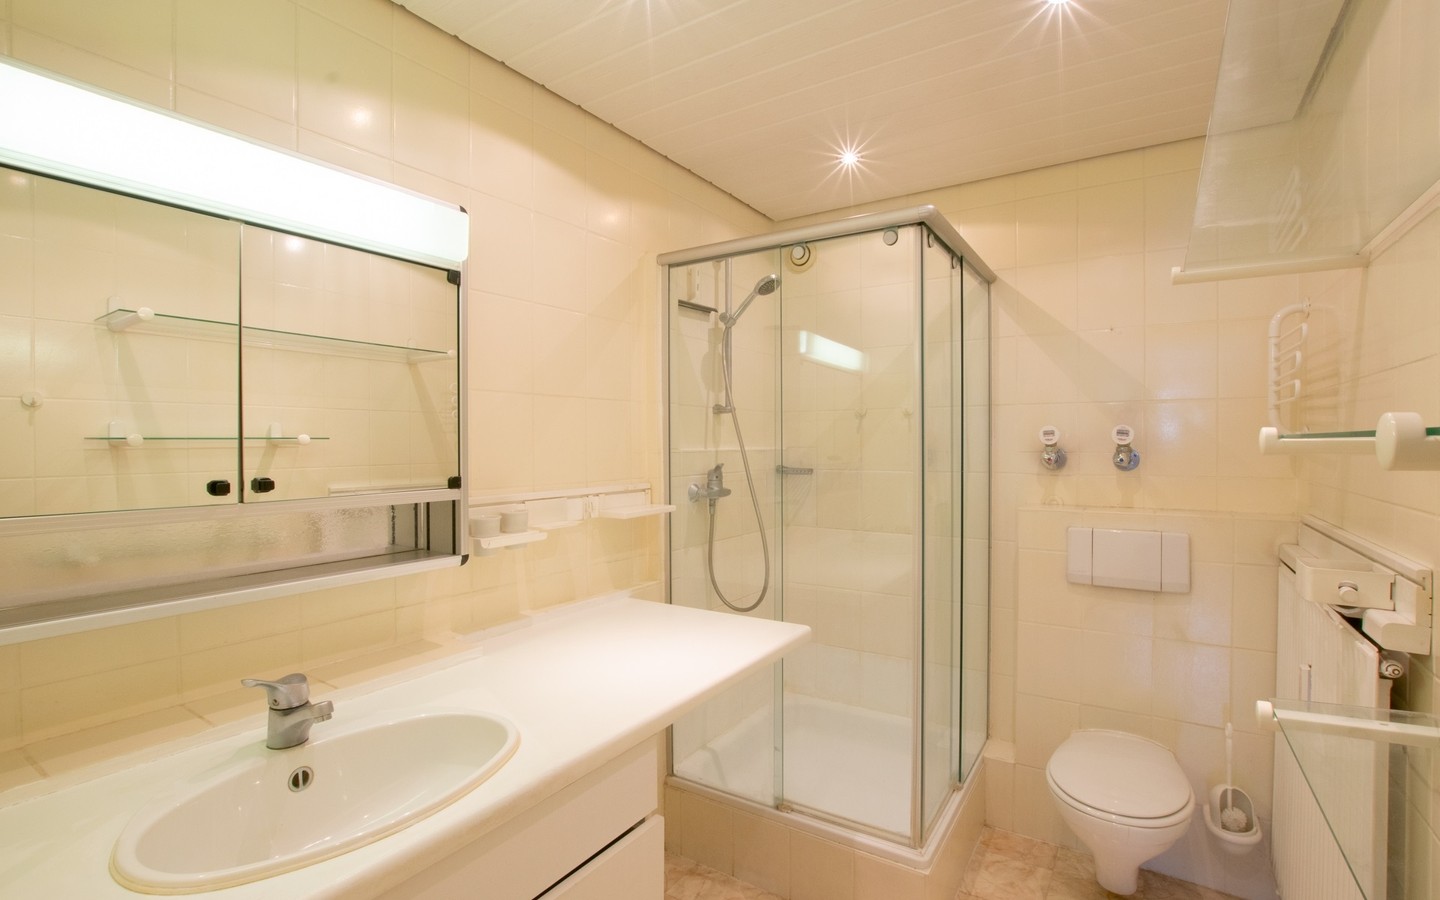 Badezimmer - Ketsch: Großzügige Vierzimmerwohnung in außergewöhnlicher Aussichtslage